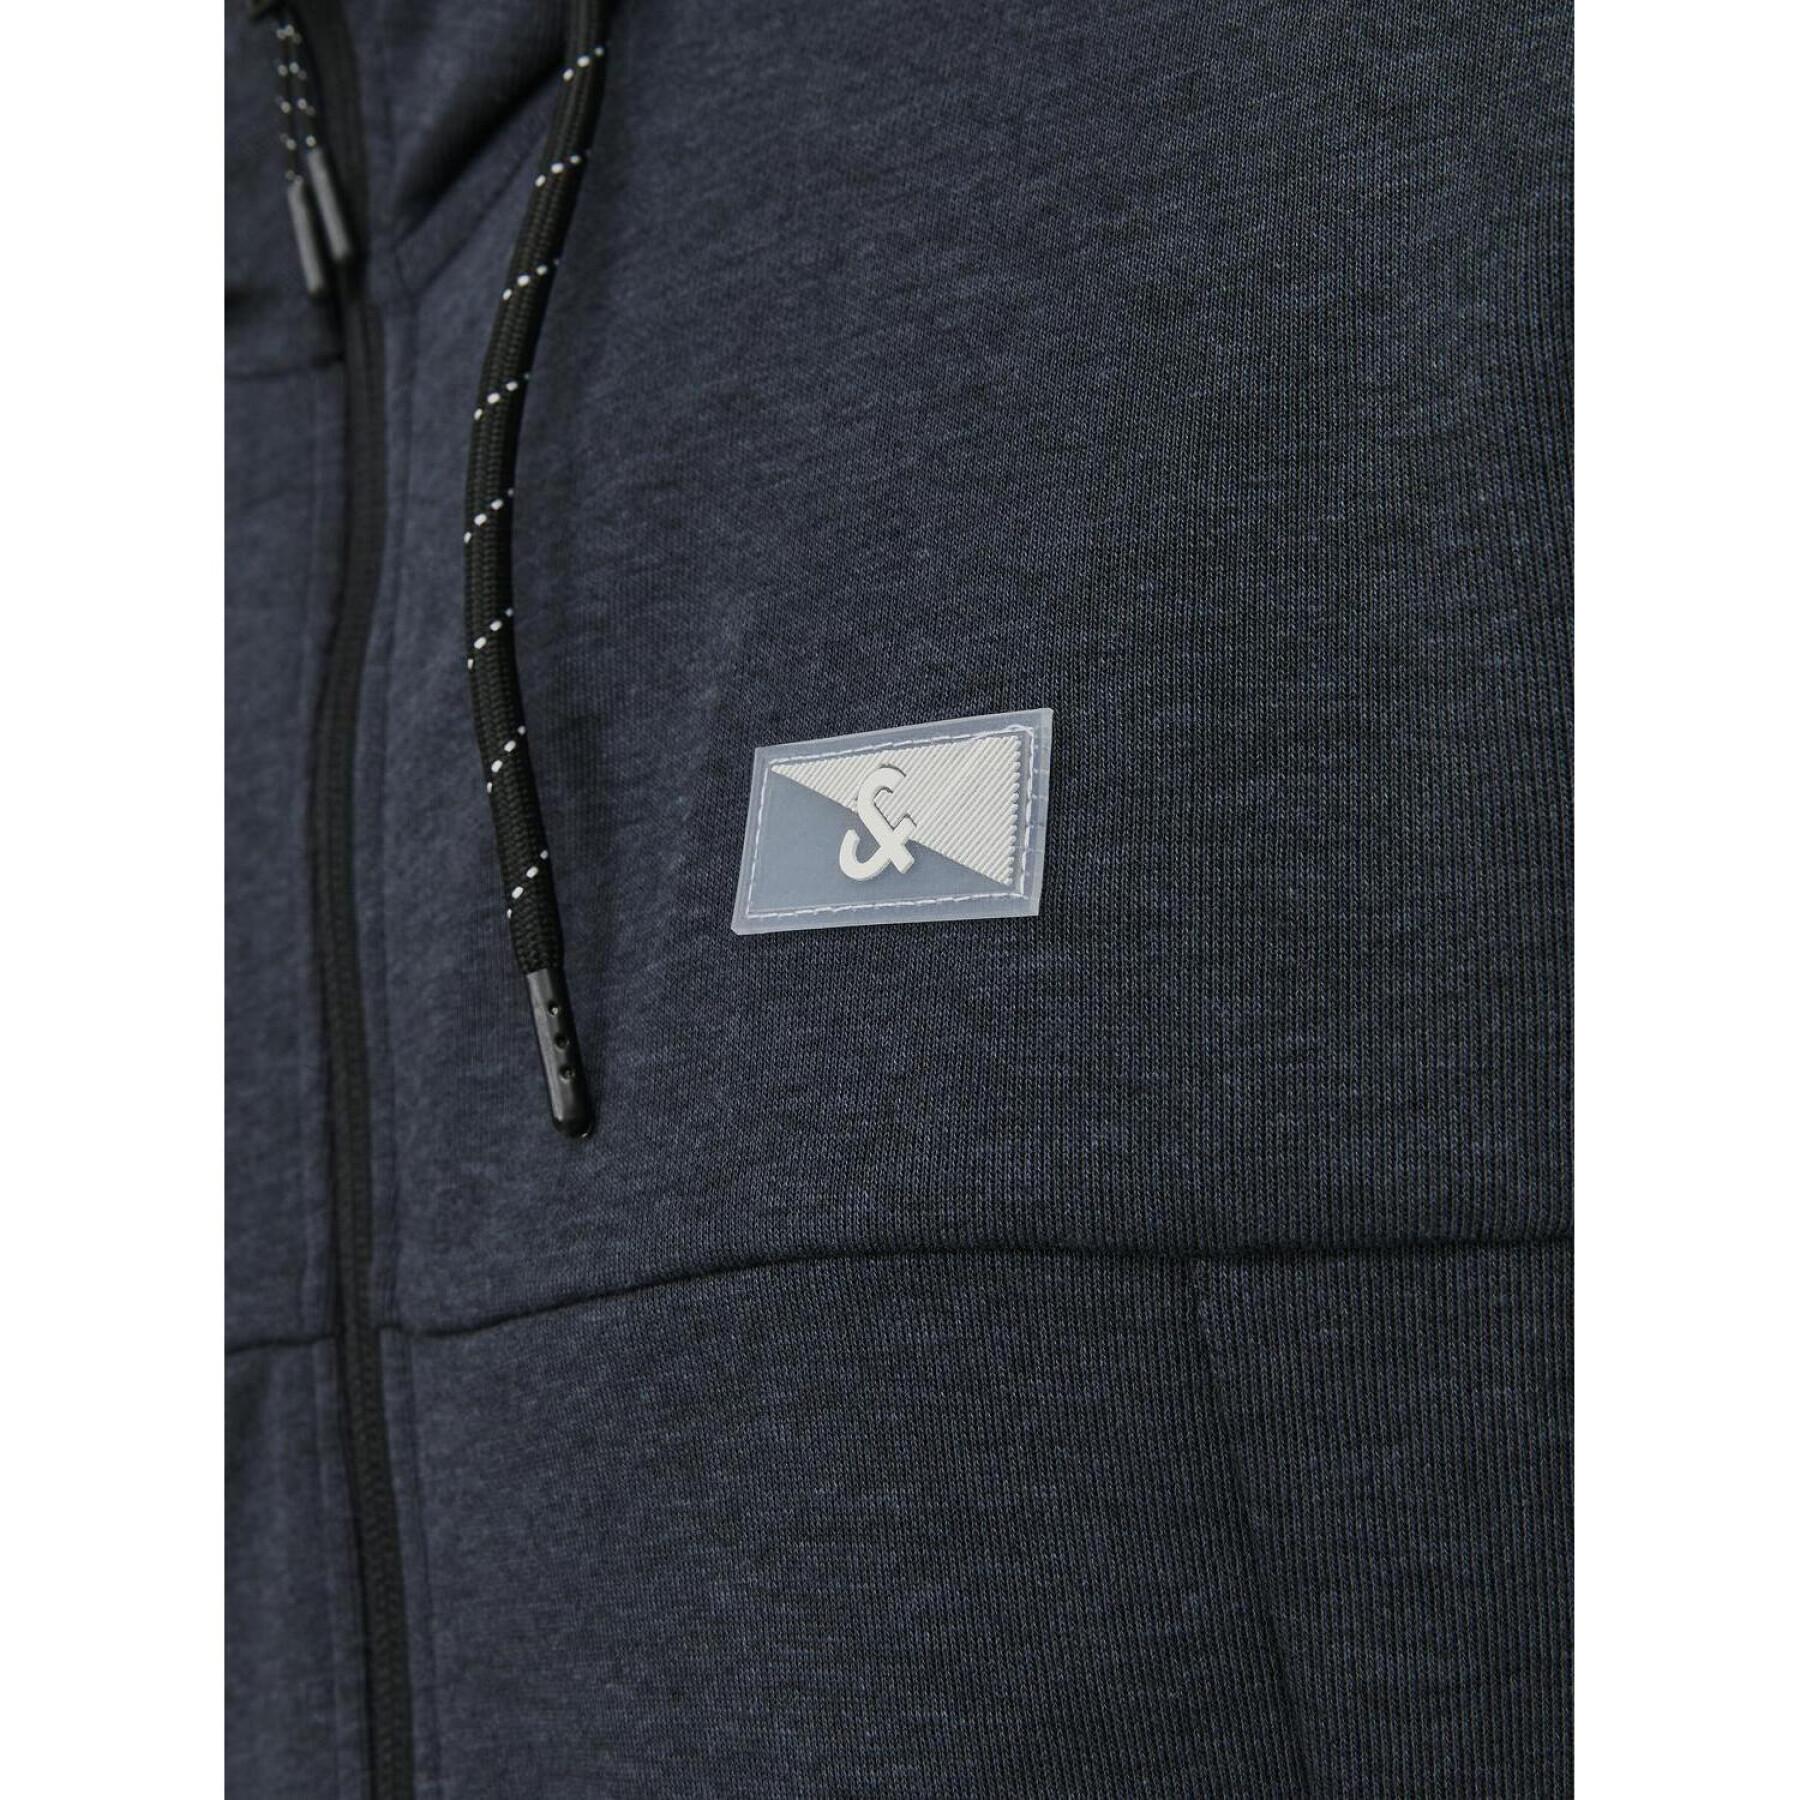 Zip-up hoodie Jack & Jones Air